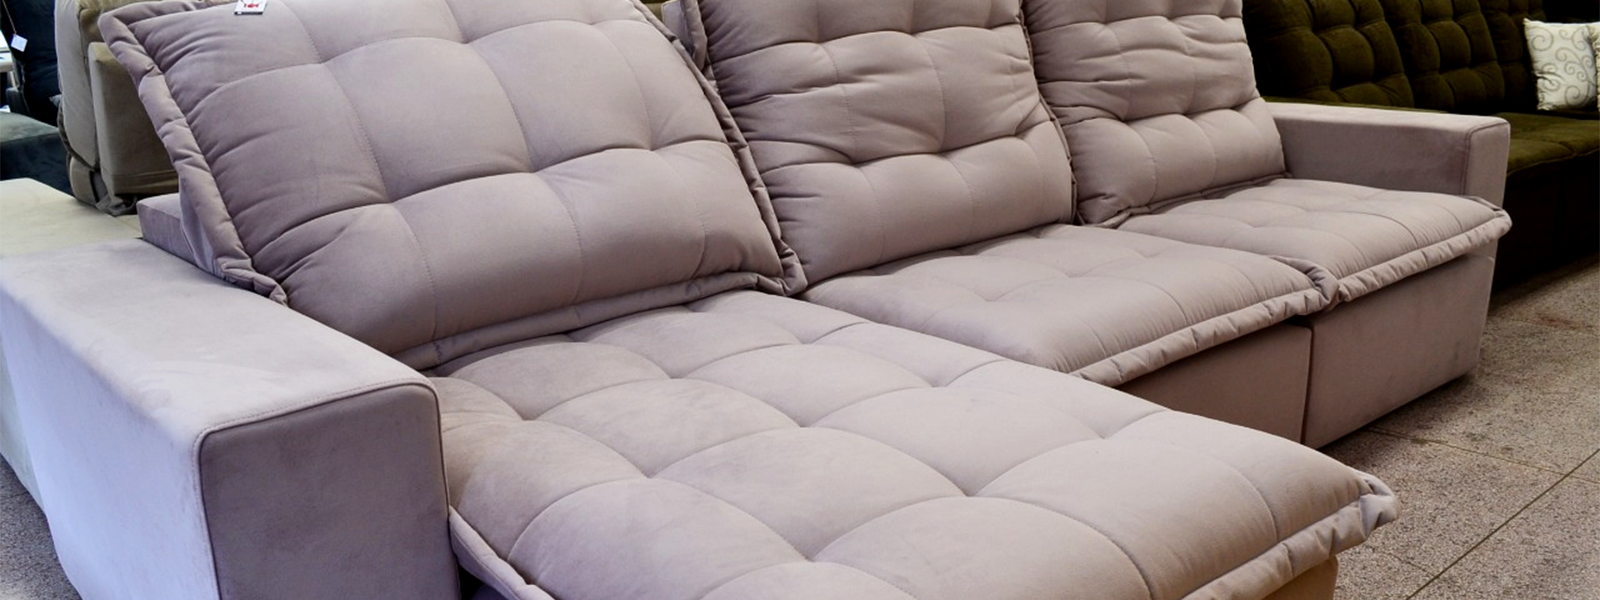 slide2-sofa-1600-600